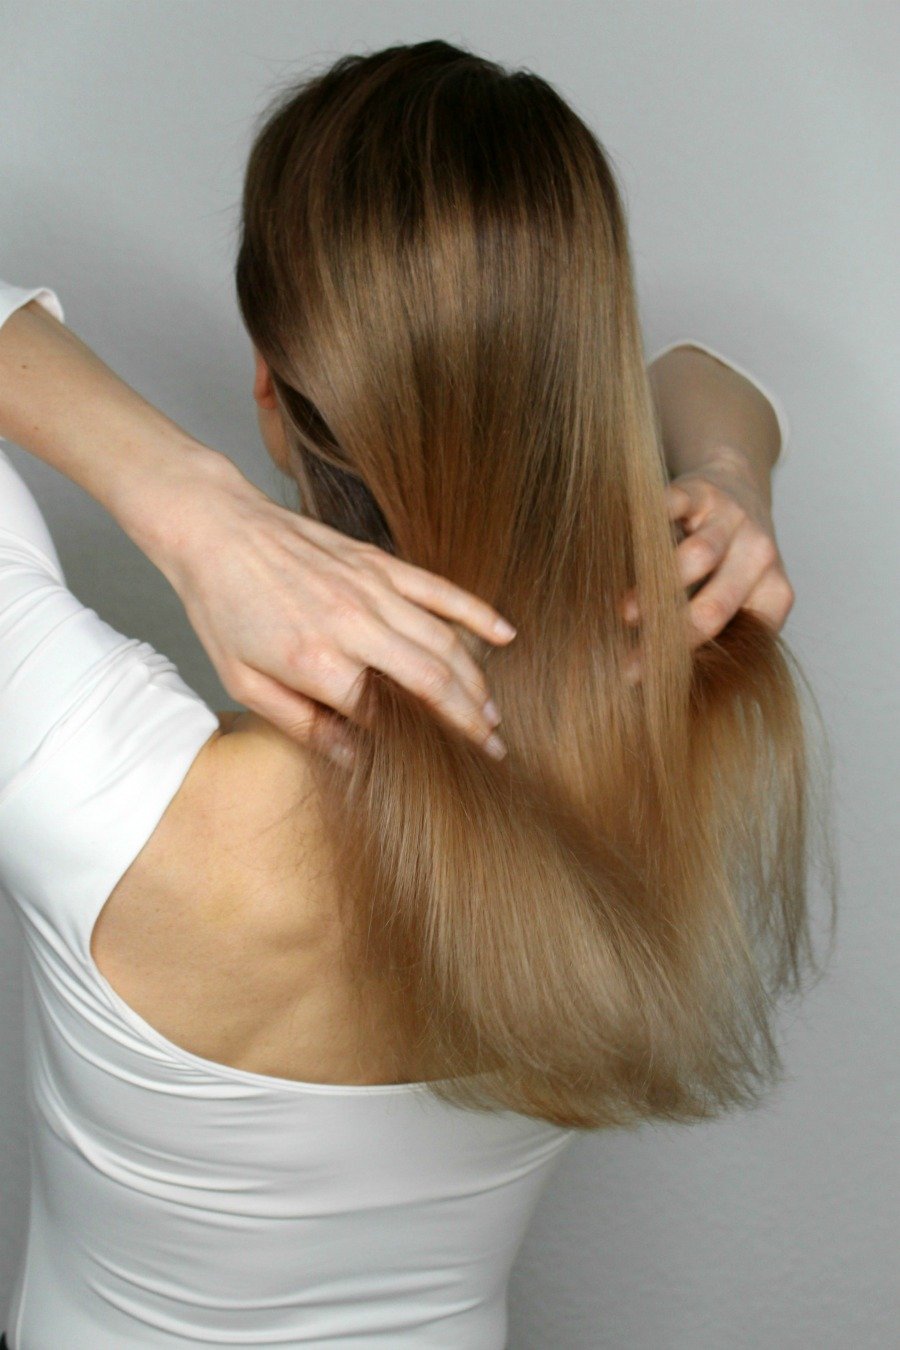 Hellen dunkelblonde strähnen mit haare 15 Frisuren